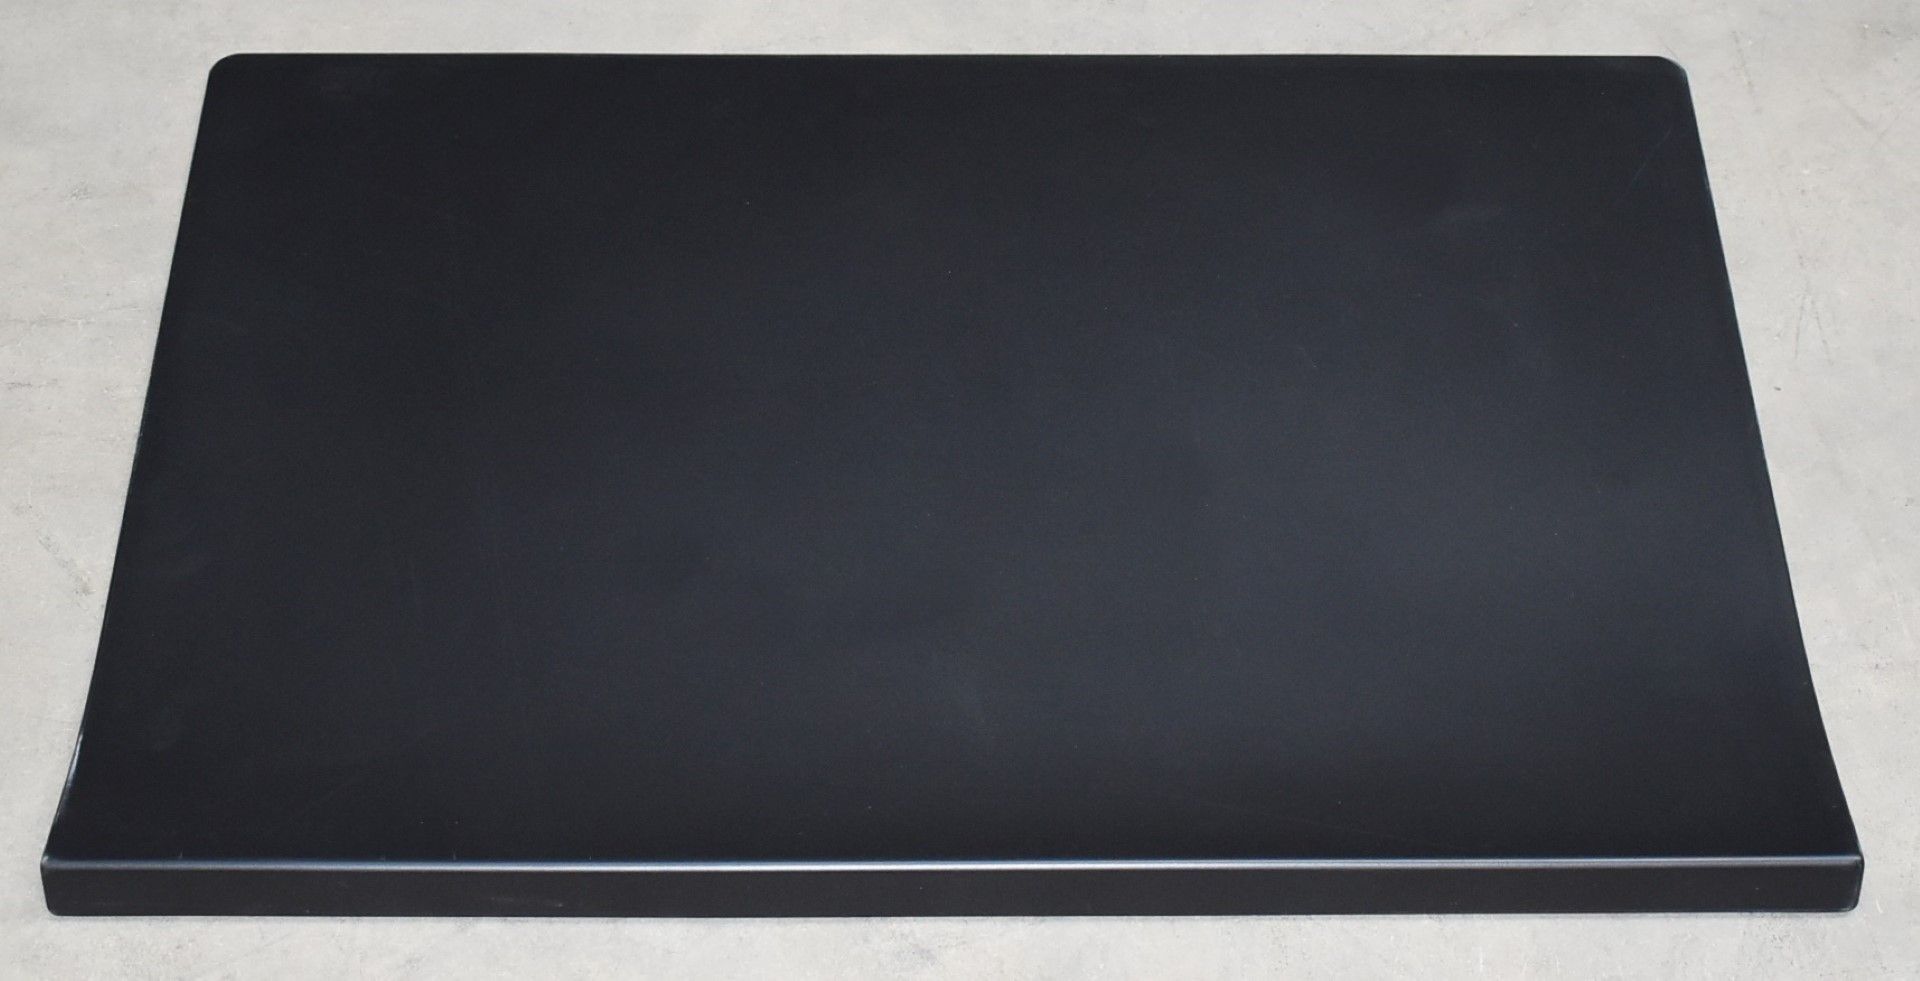 1 x Vitra Joyn Desk Pad in Black - Designed by Ronan & Erwan Bouroullec - Size: 70 x 50 cms - RRP £ - Image 2 of 7